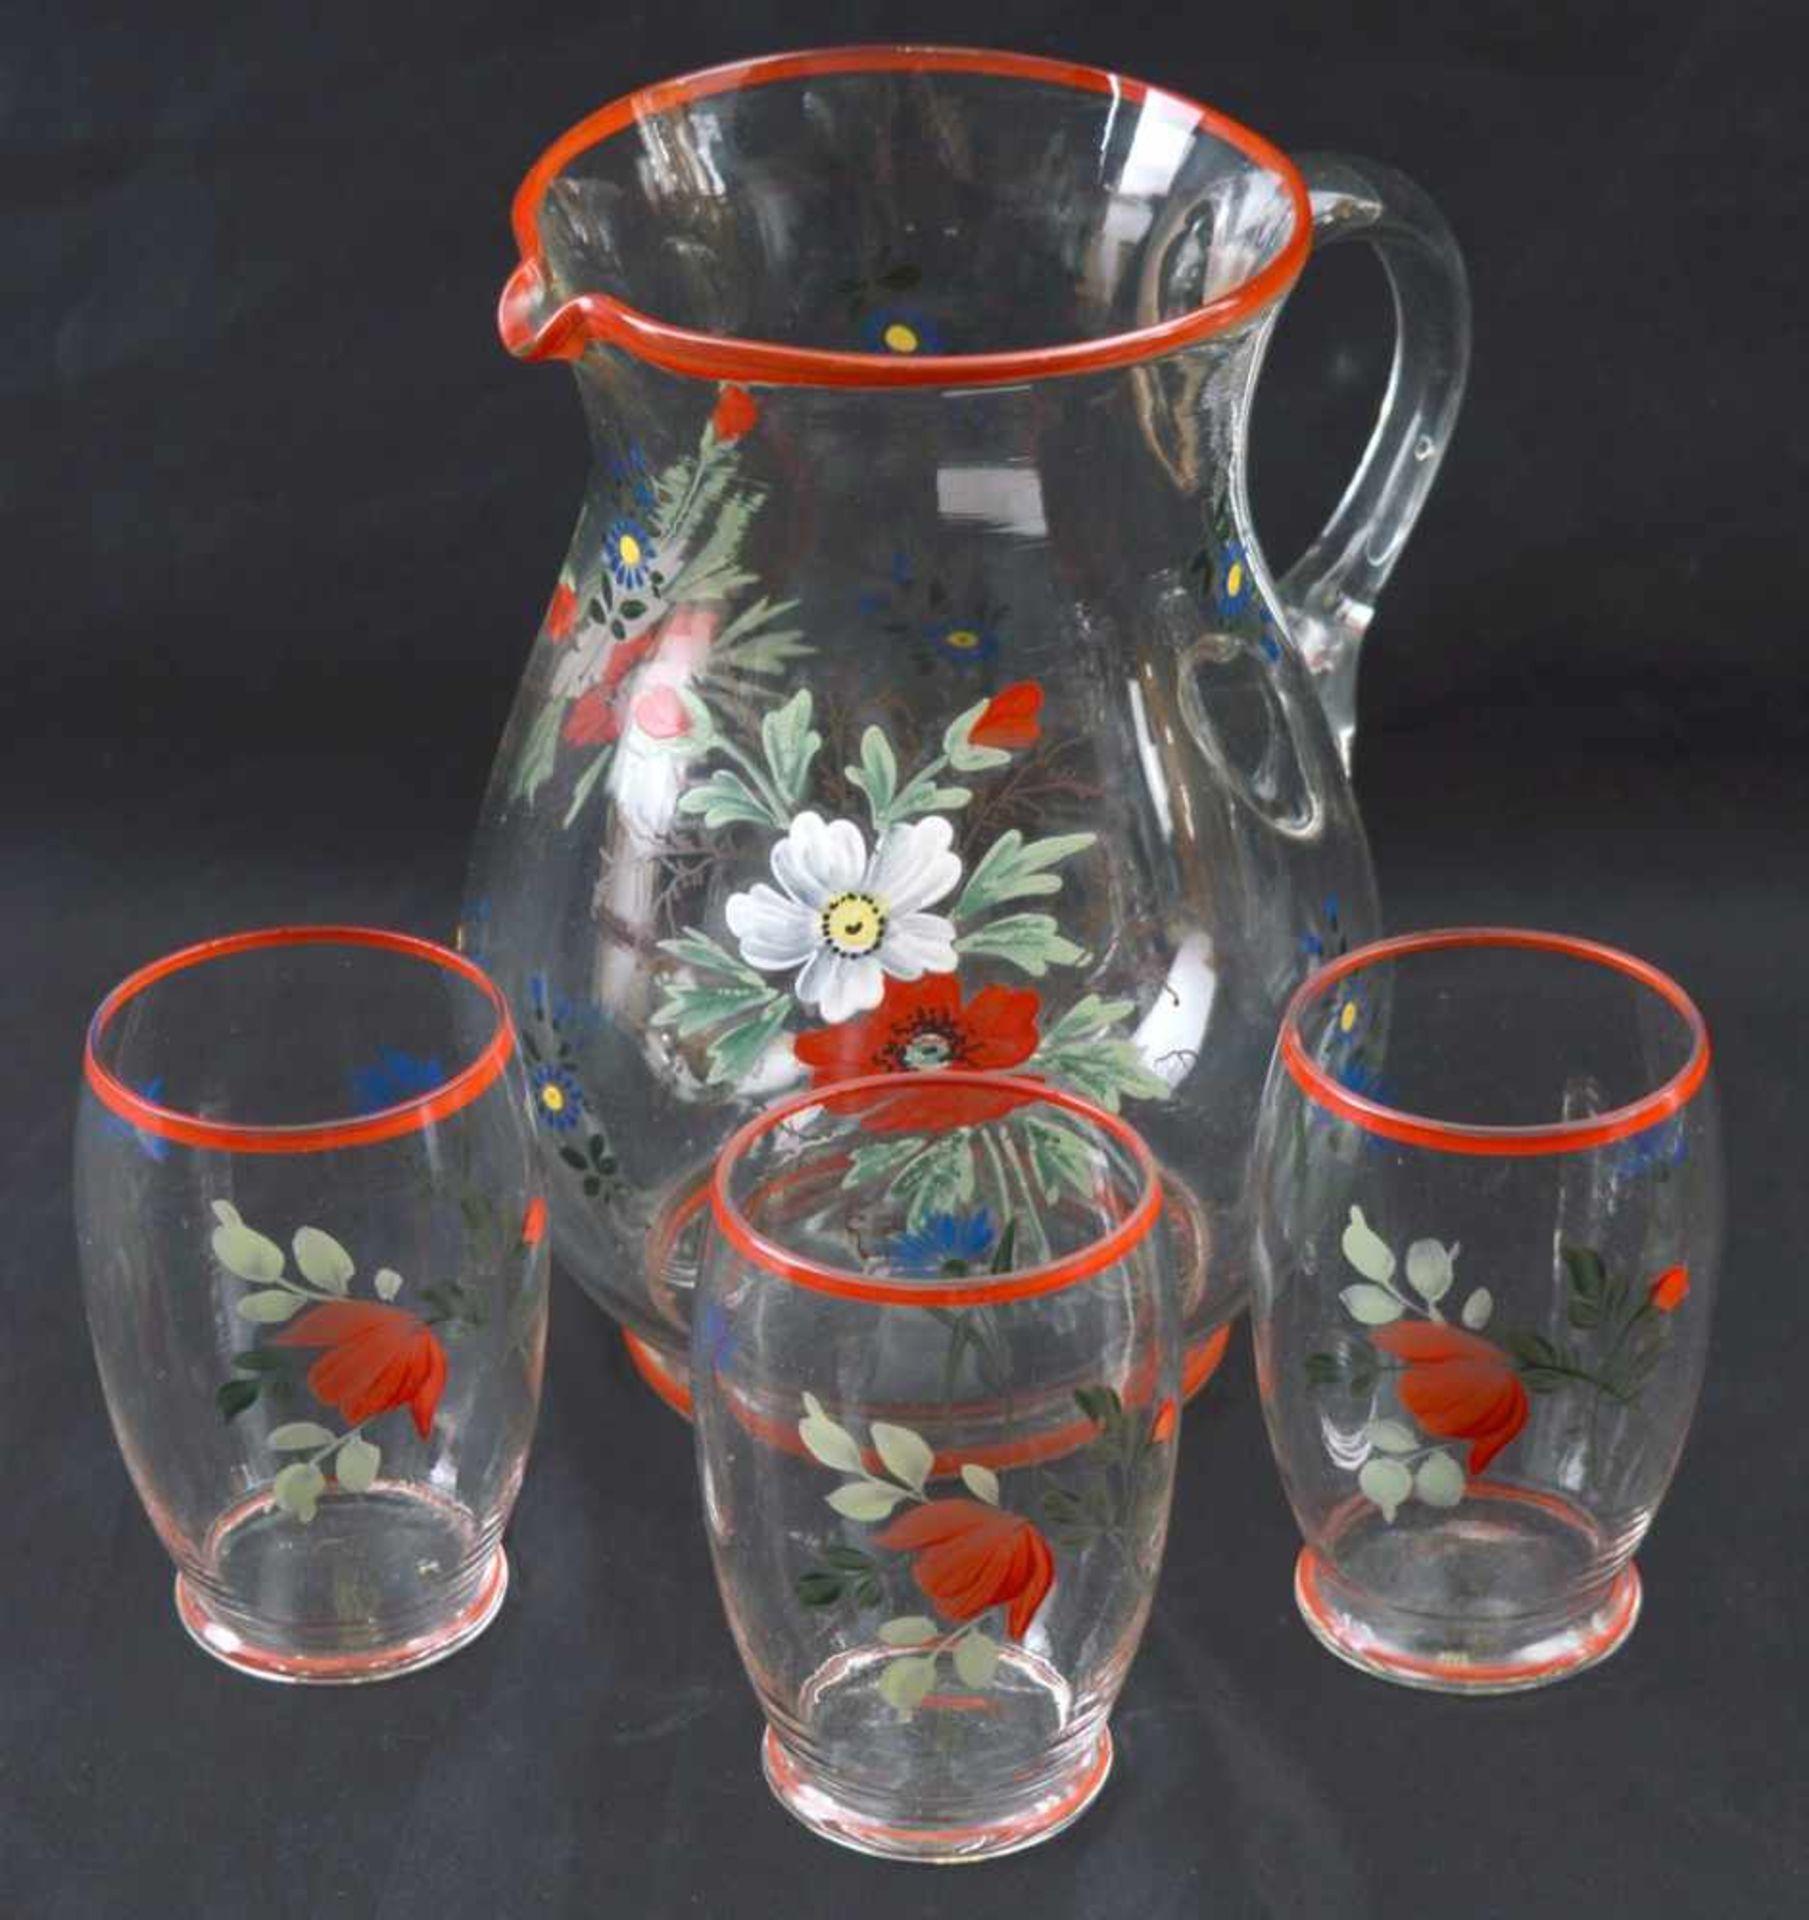 Krug farbl. Glas, roter Rand, leicht gebaucht, mit bunter Blumenbemalung, mit drei Gläsern, H 19 cm,